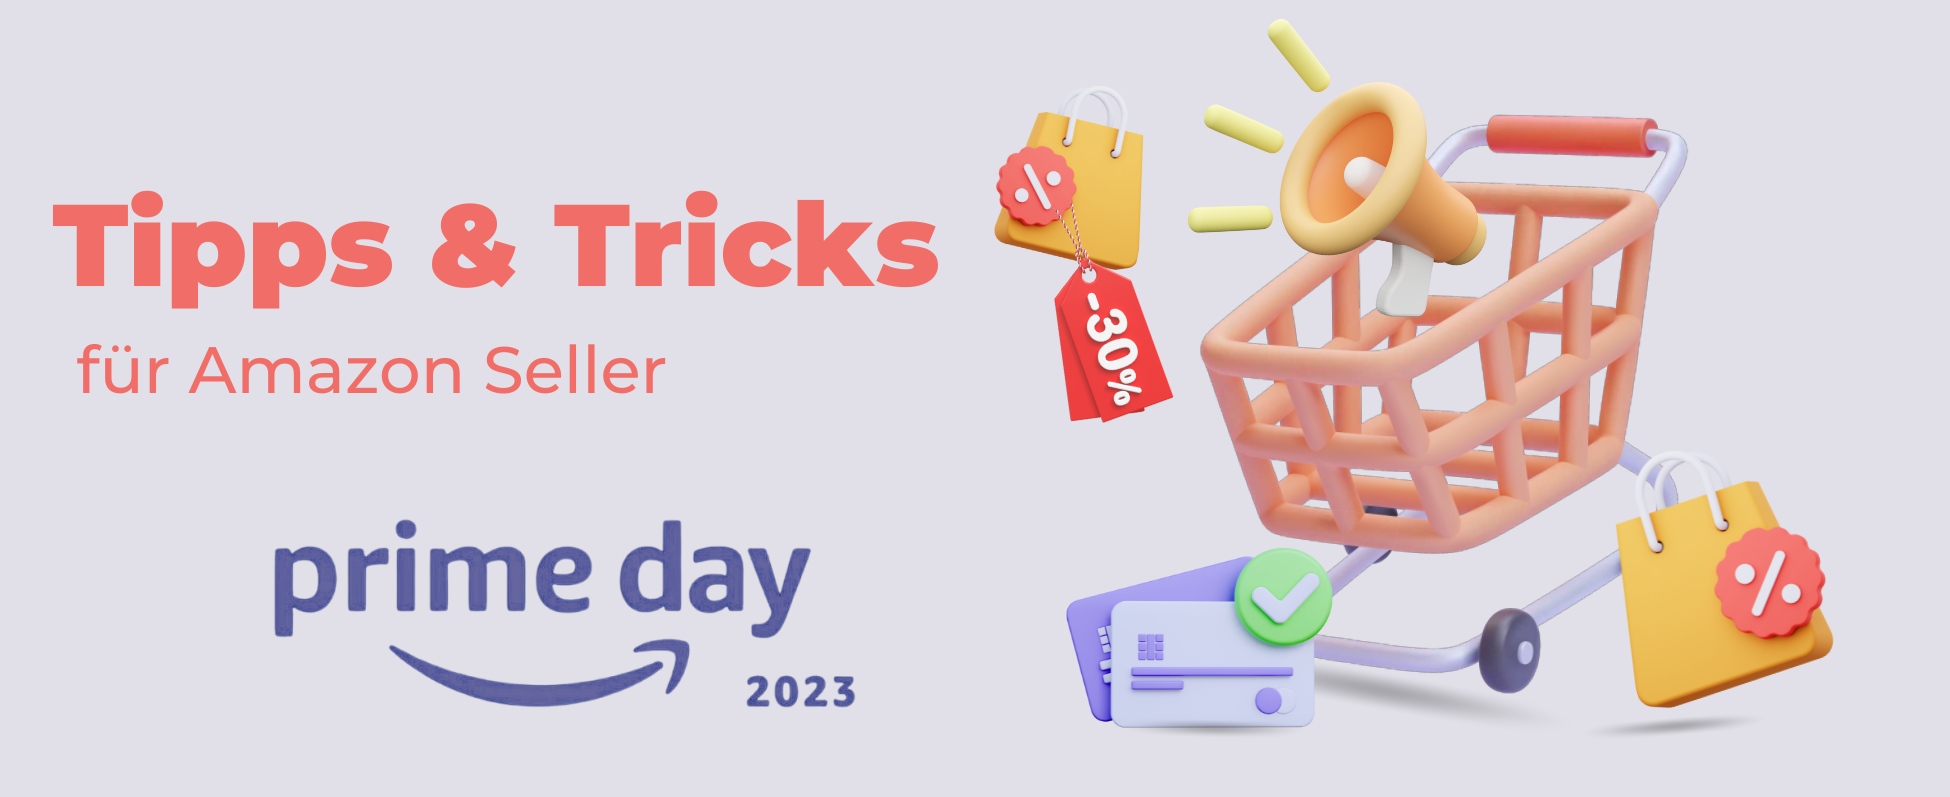 Prime Day 2023: Erfolgreich auf Amazon mit diesen Tipps & Tricks